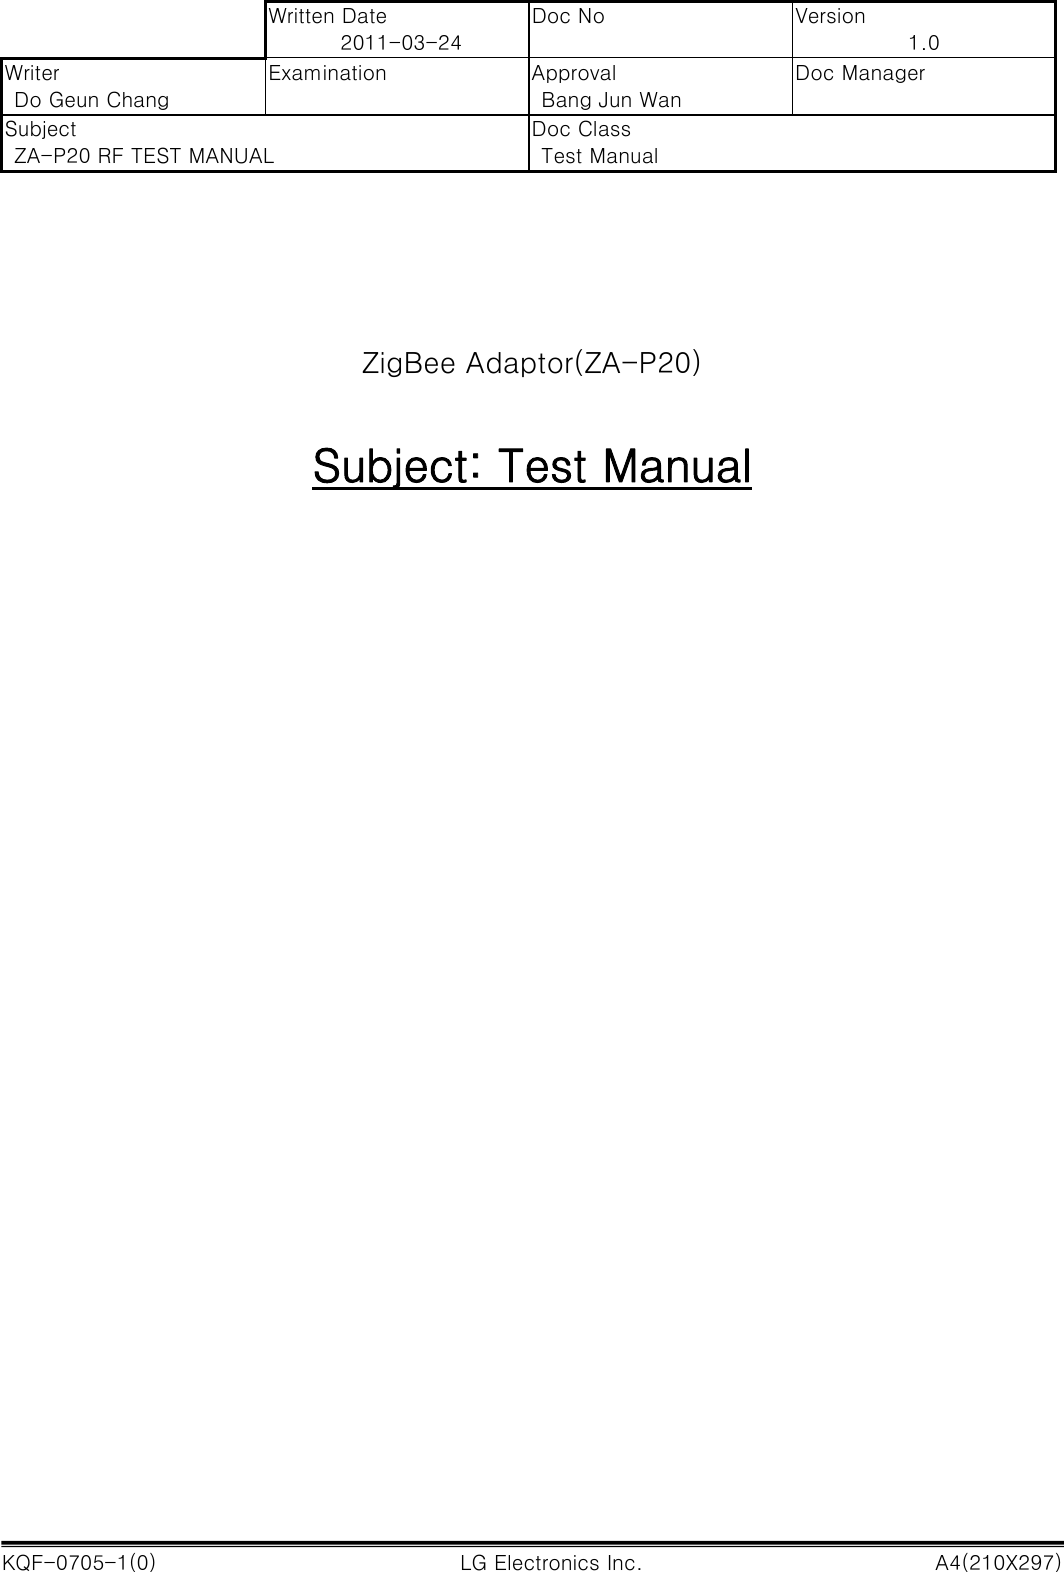  Written Date 2011-03-24 Doc No  Version 1.0 Writer Do Geun Chang Examination  Approval Bang Jun Wan Doc Manager Subject ZA-P20 RF TEST MANUAL Doc Class Test Manual  KQF-0705-1(0)                                                        LG Electronics Inc.                                                        A4(210X297)       ZigBee Adaptor(ZA-P20)   Subject: Test Manual                              